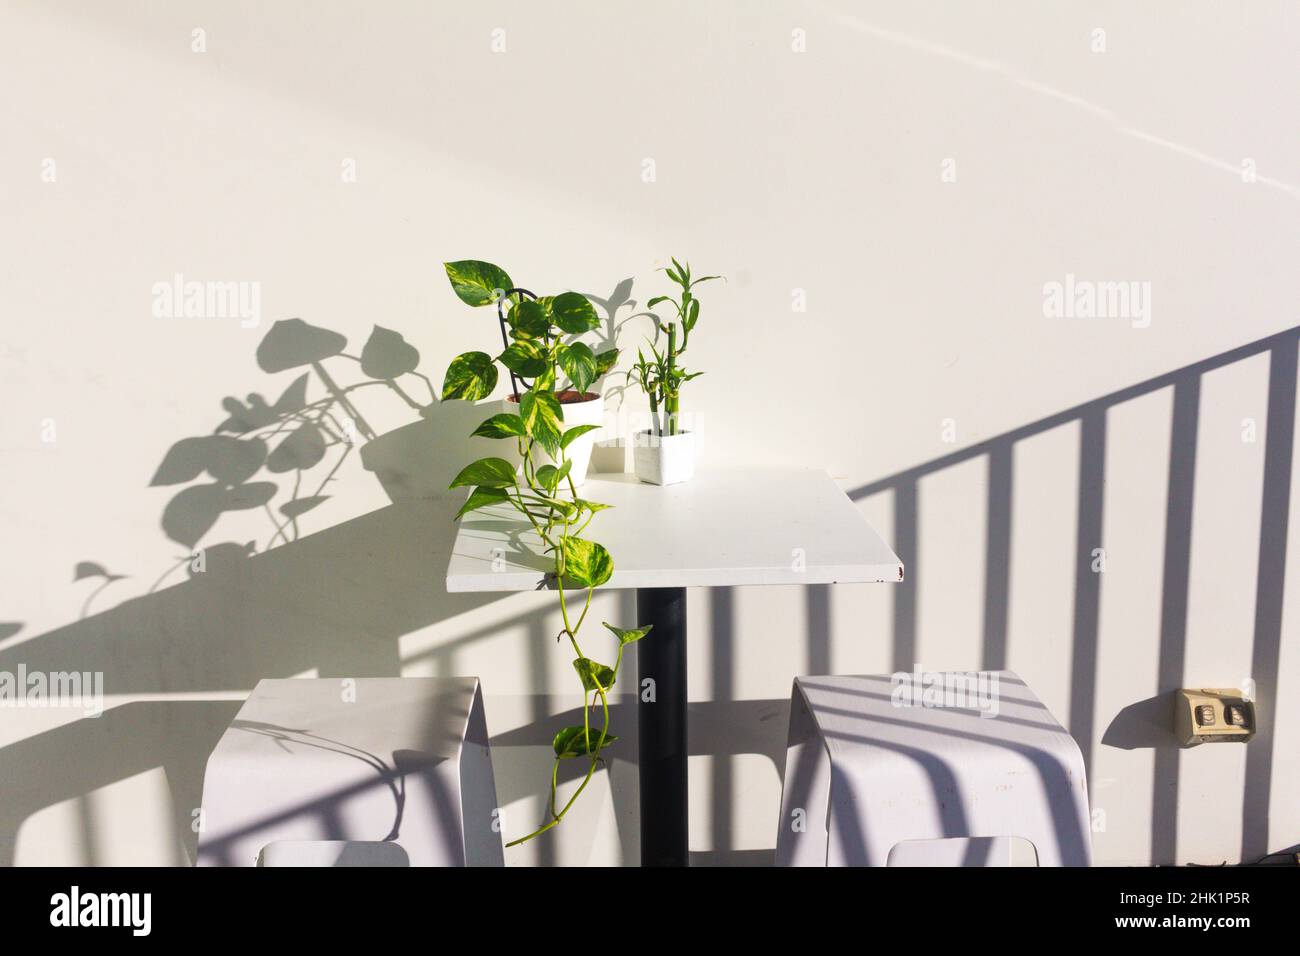 plantas de hiedra y bambú del diablo en maceta blanca sobre fondo blanco Foto de stock